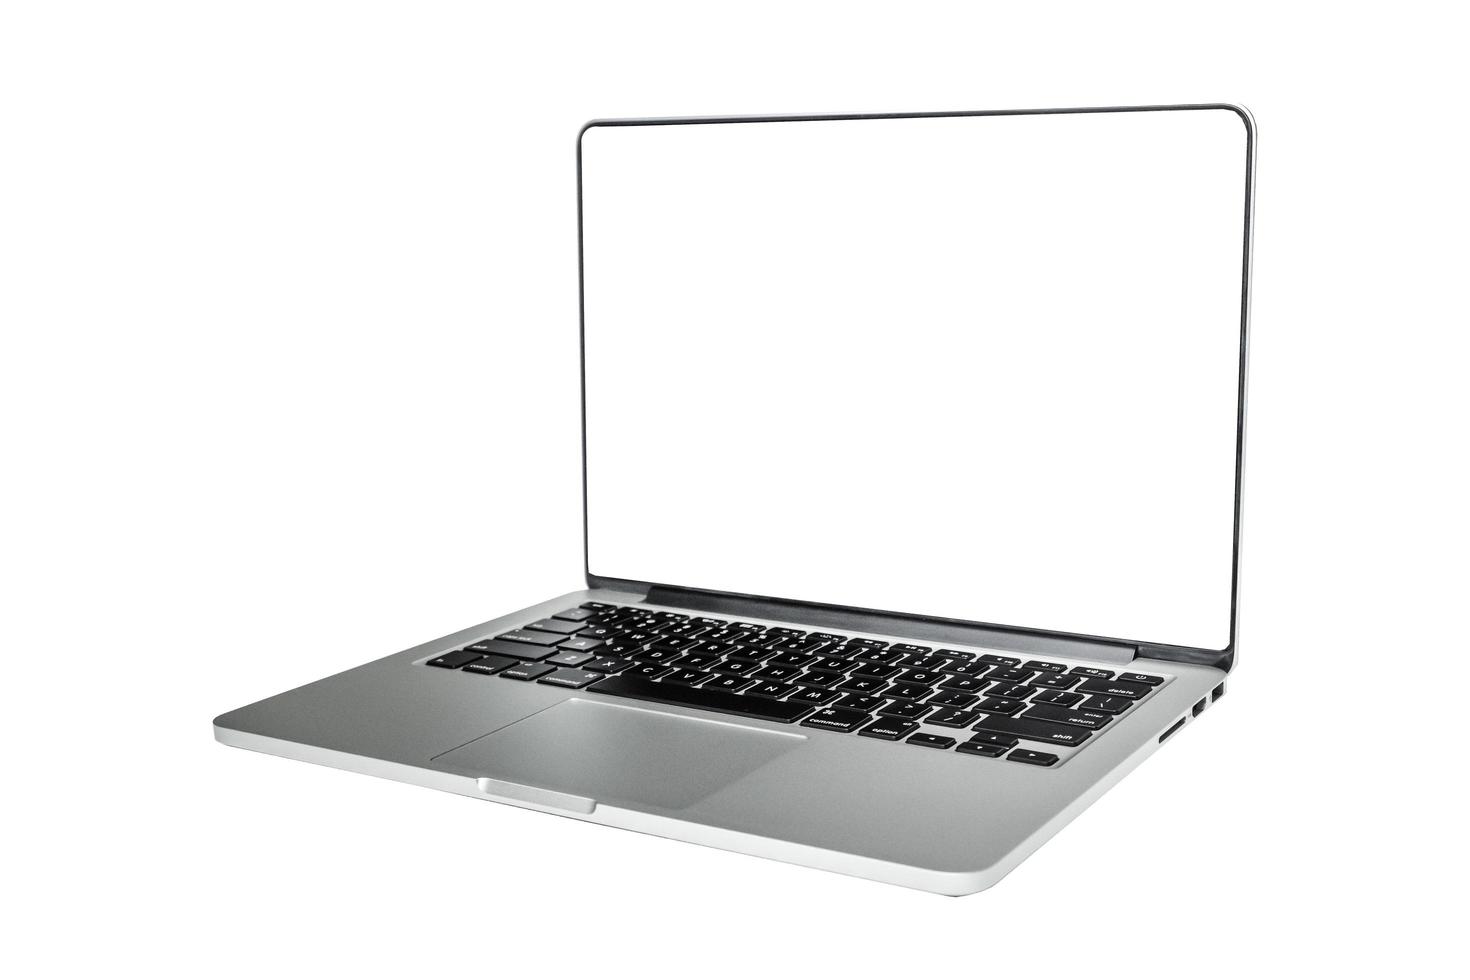 laptop, notizbuch mit leerem bildschirm auf weißem hintergrund. foto